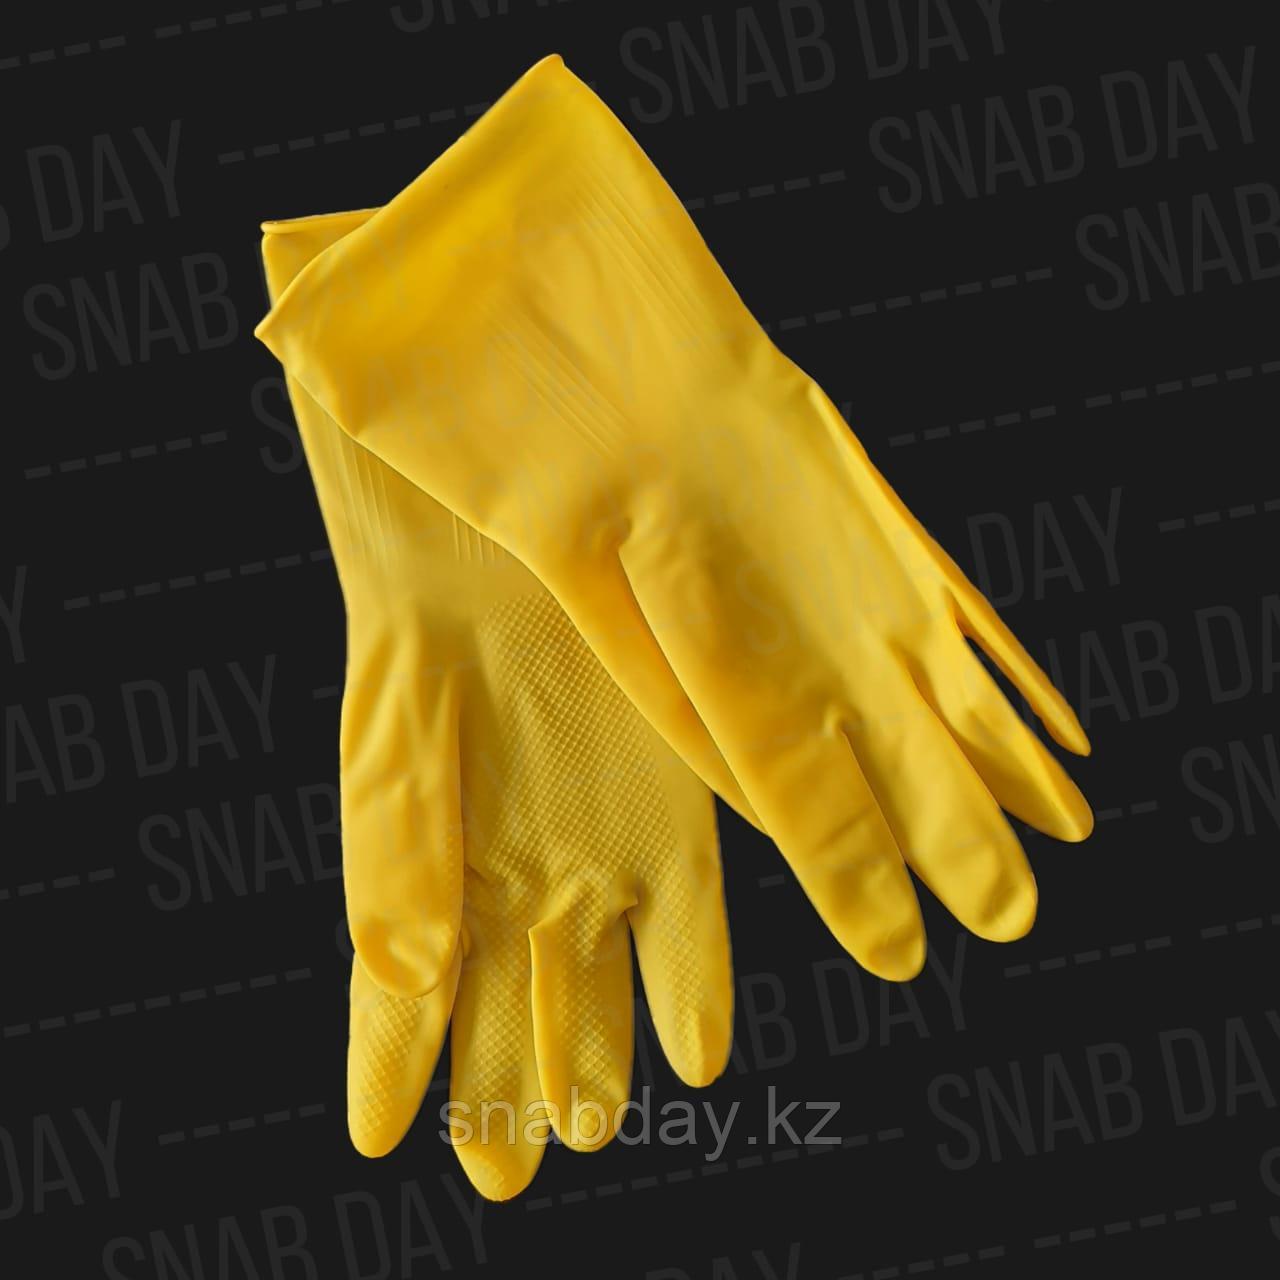 Заказать Резиновые перчатки Желтые от Snab Day ️